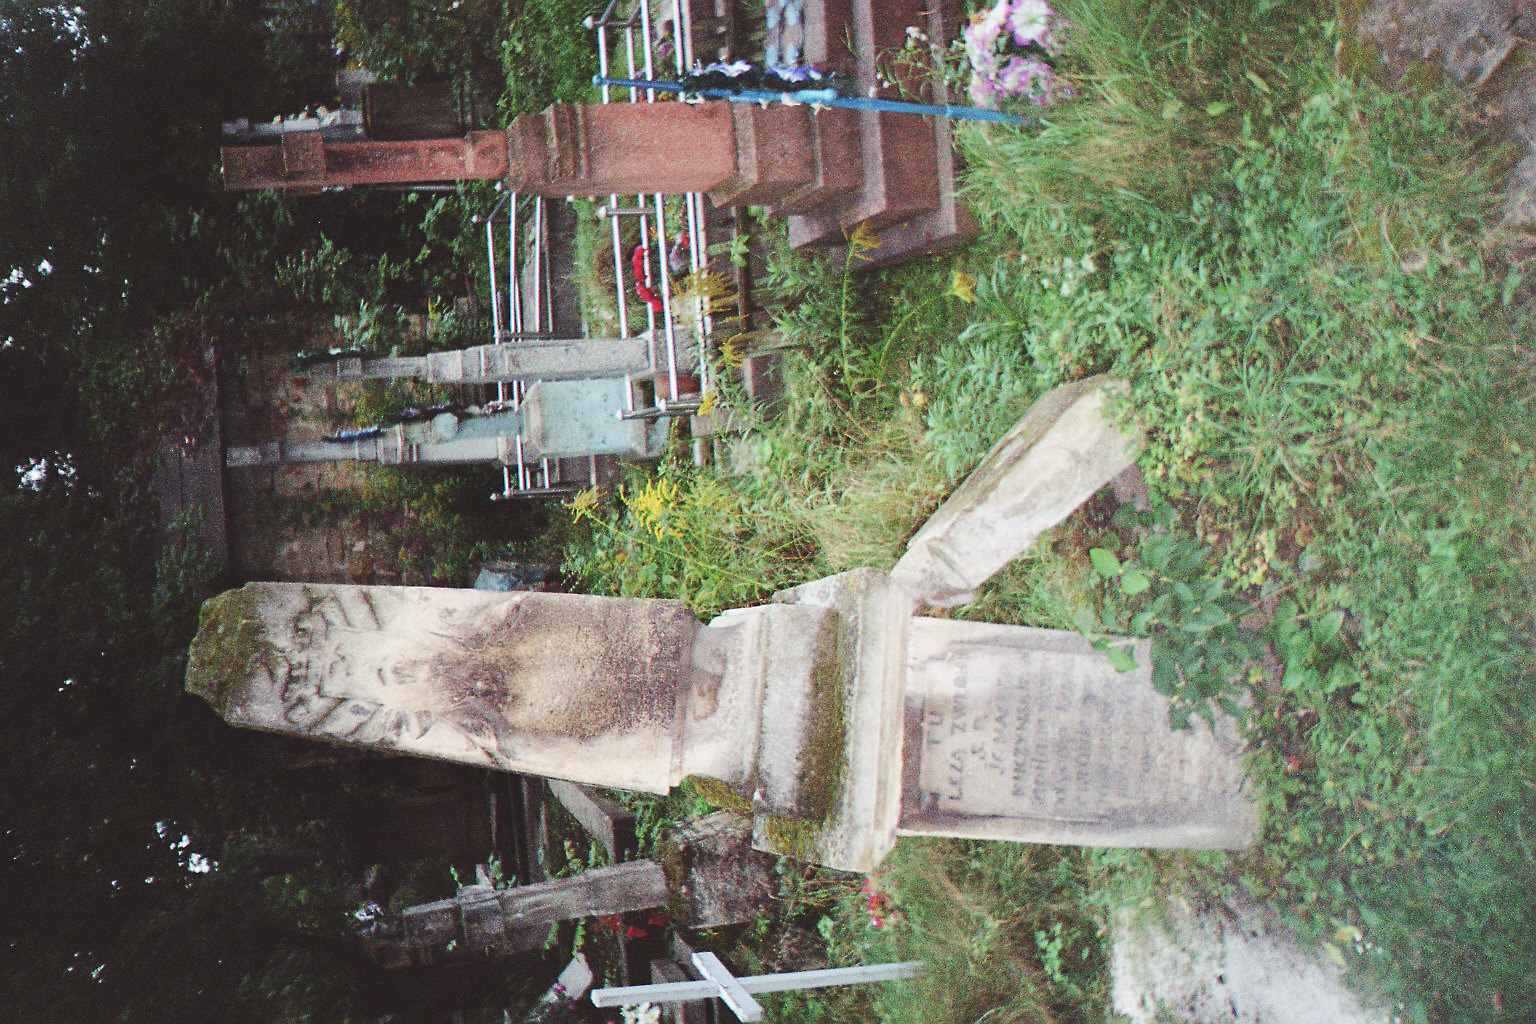 Tombstone of Ignacy Kuczynski, Zaleszczyki cemetery, as of 2005.